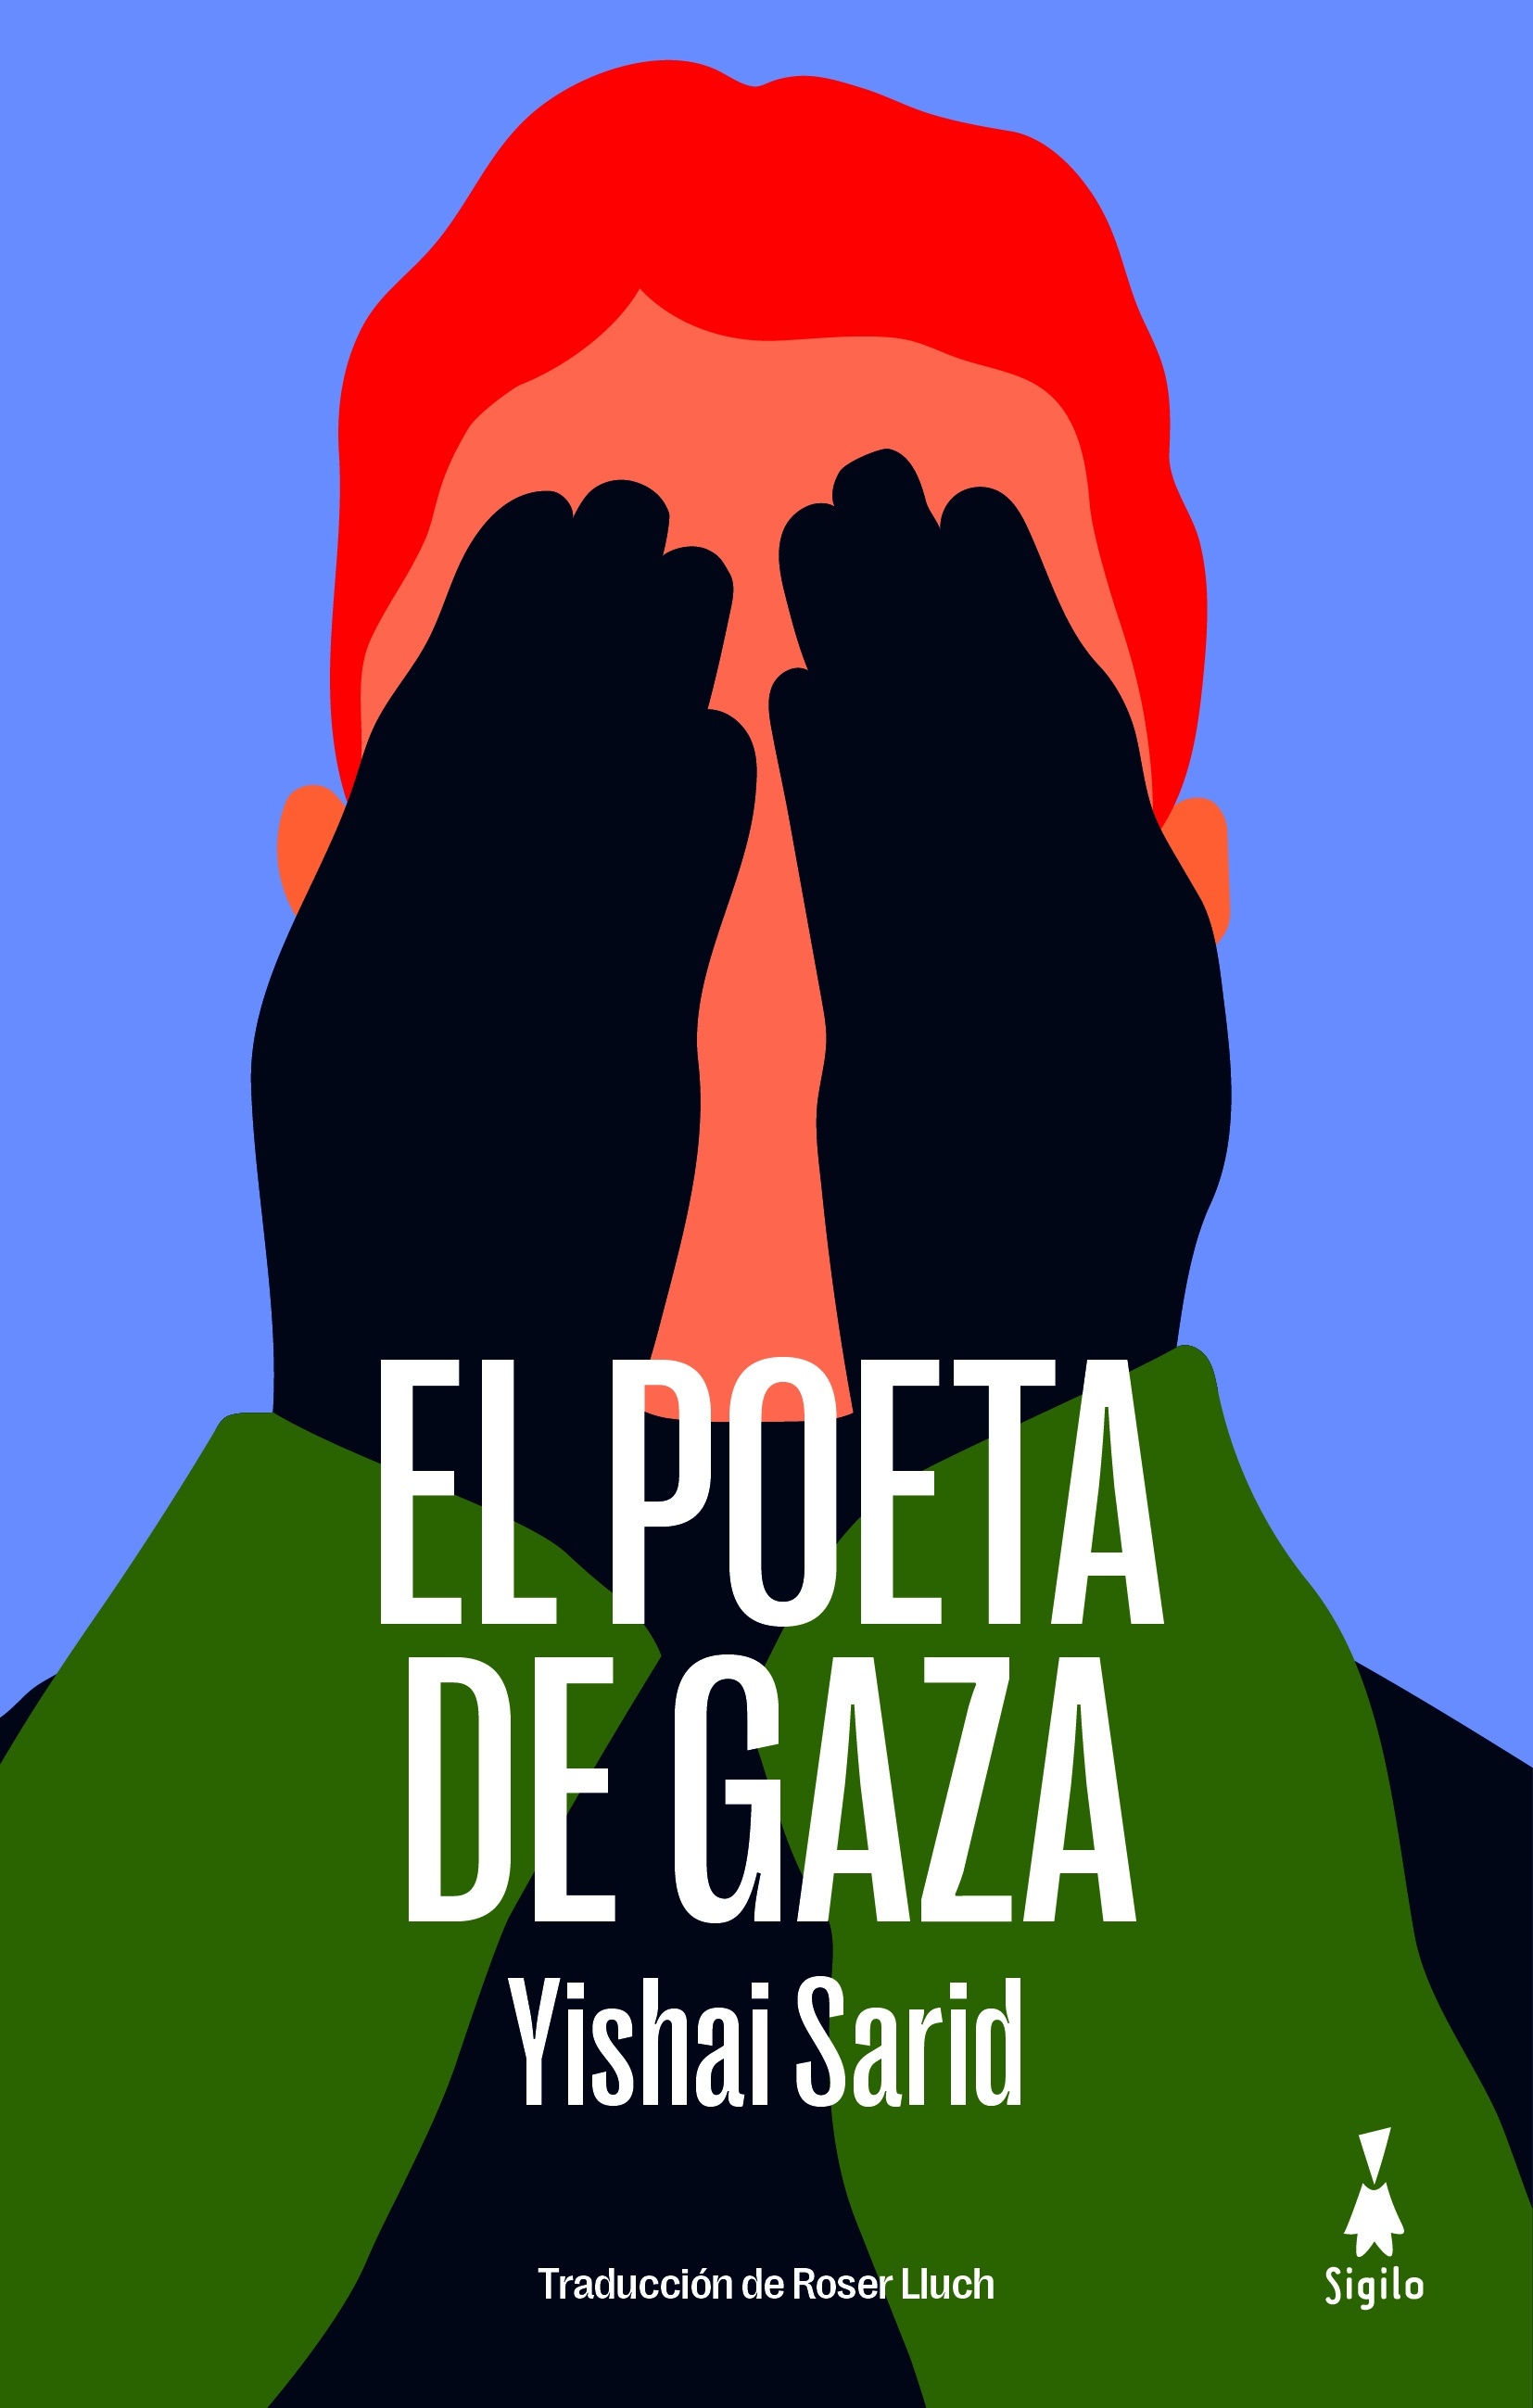 Poeta de Gaza, El